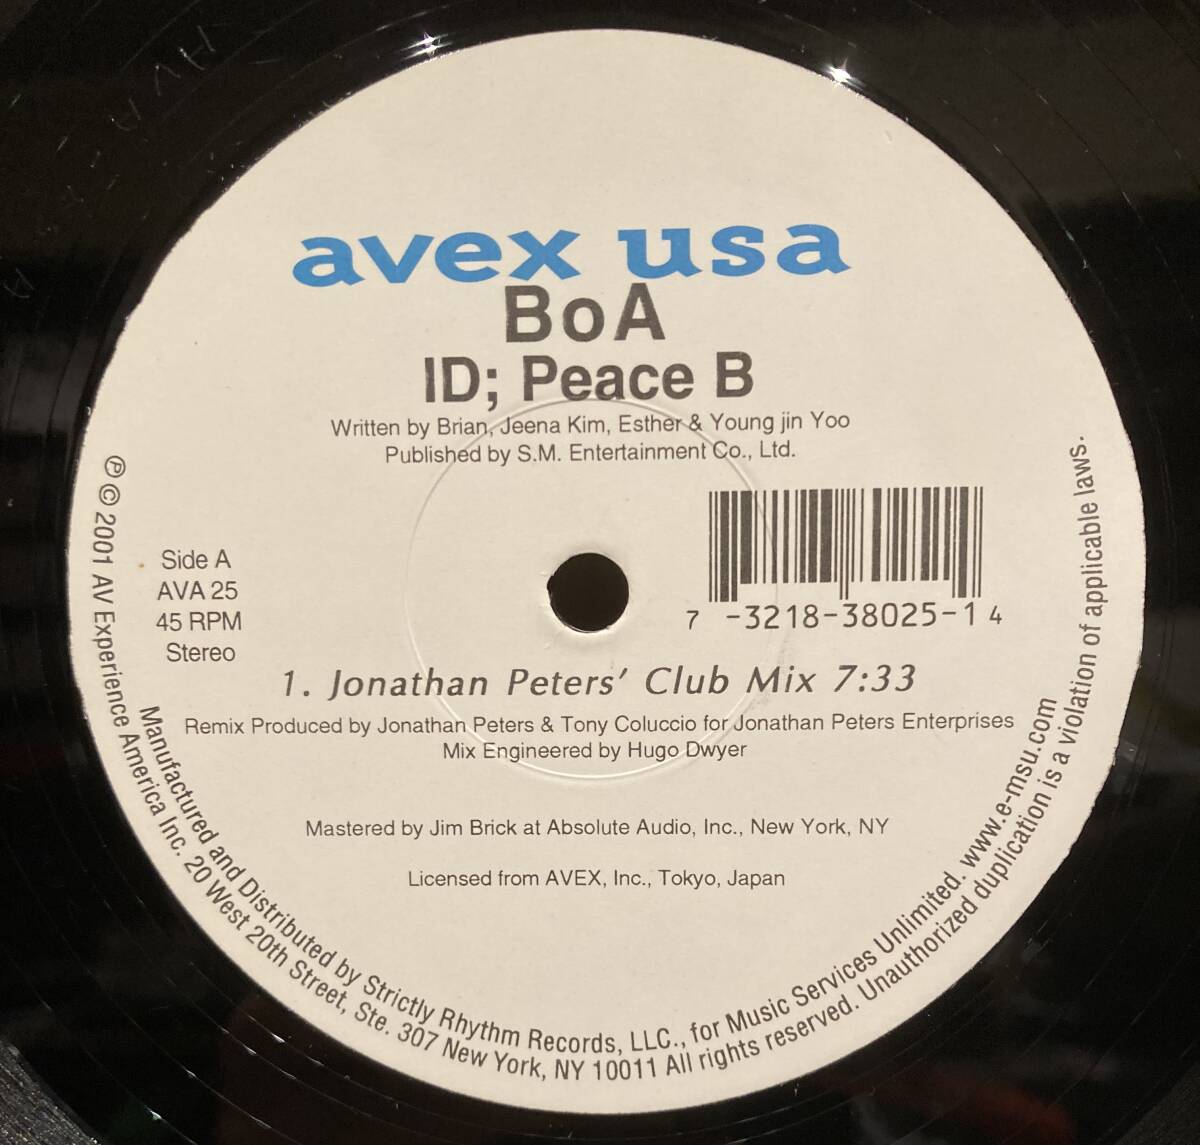 ◇シュリンク付き!限定アナログ盤/12inch◇BoA / ID; Peace B ◇Avex USA/AVA 25 Remixed by Jonathan Peters Club Mix Tony Coluccio_画像3